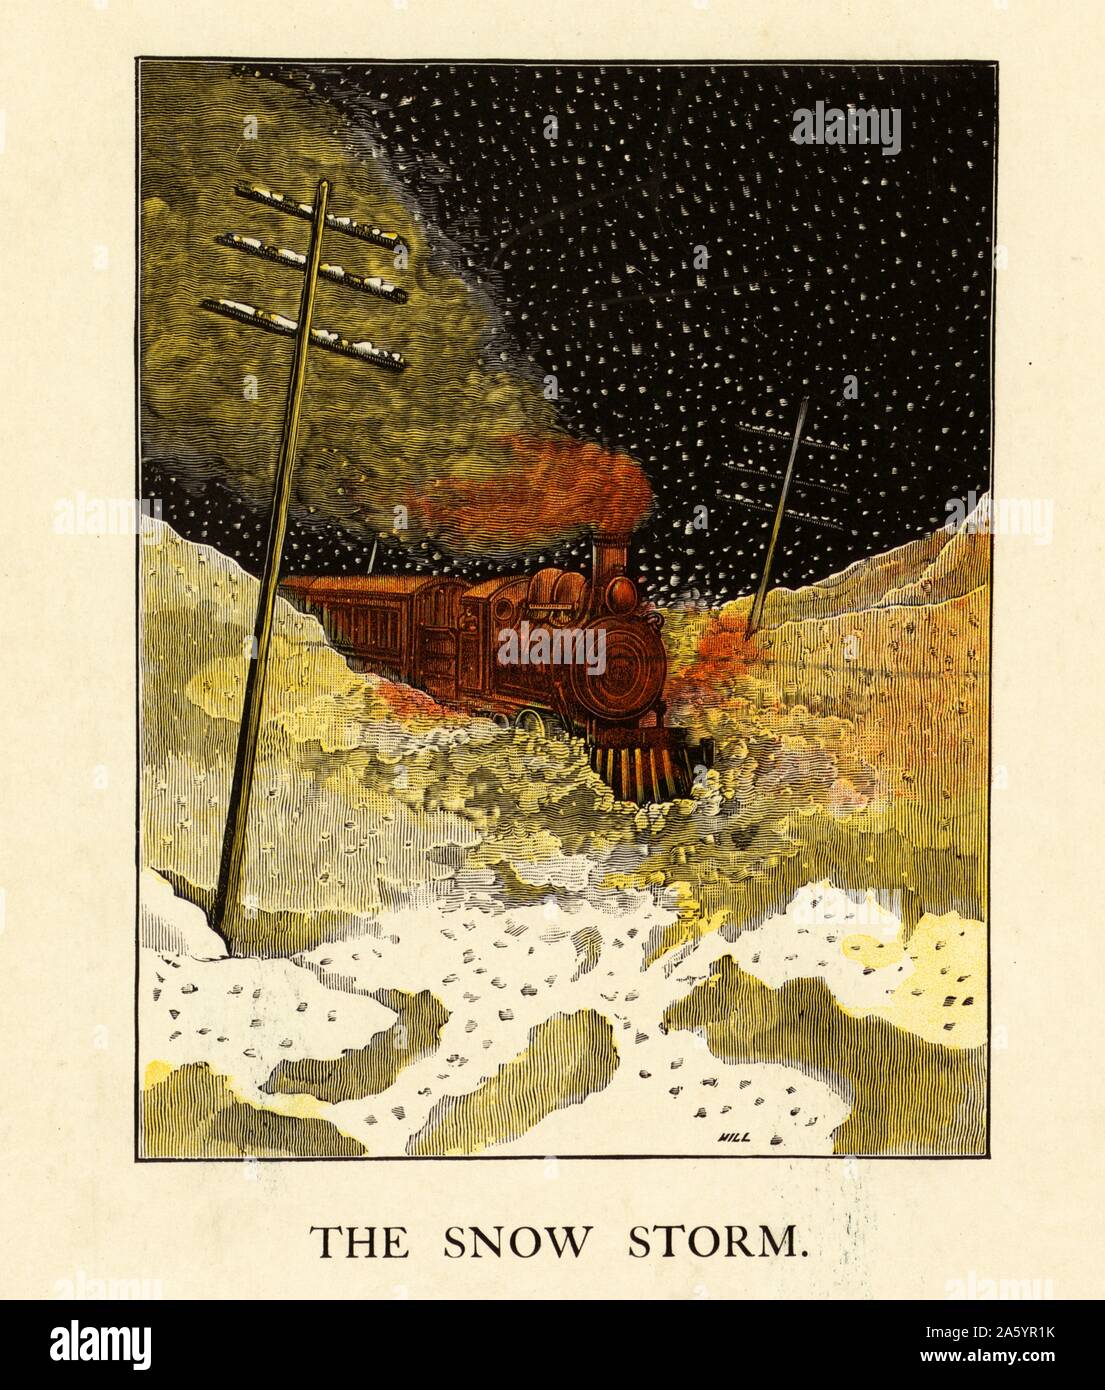 Un Americano di illustrazione di un treno a vapore di notte in cammino attraverso una tempesta di neve 1870. Telegraph visto in questa illustrazione, pali prima è diventato banale nella metà del XIX secolo Foto Stock